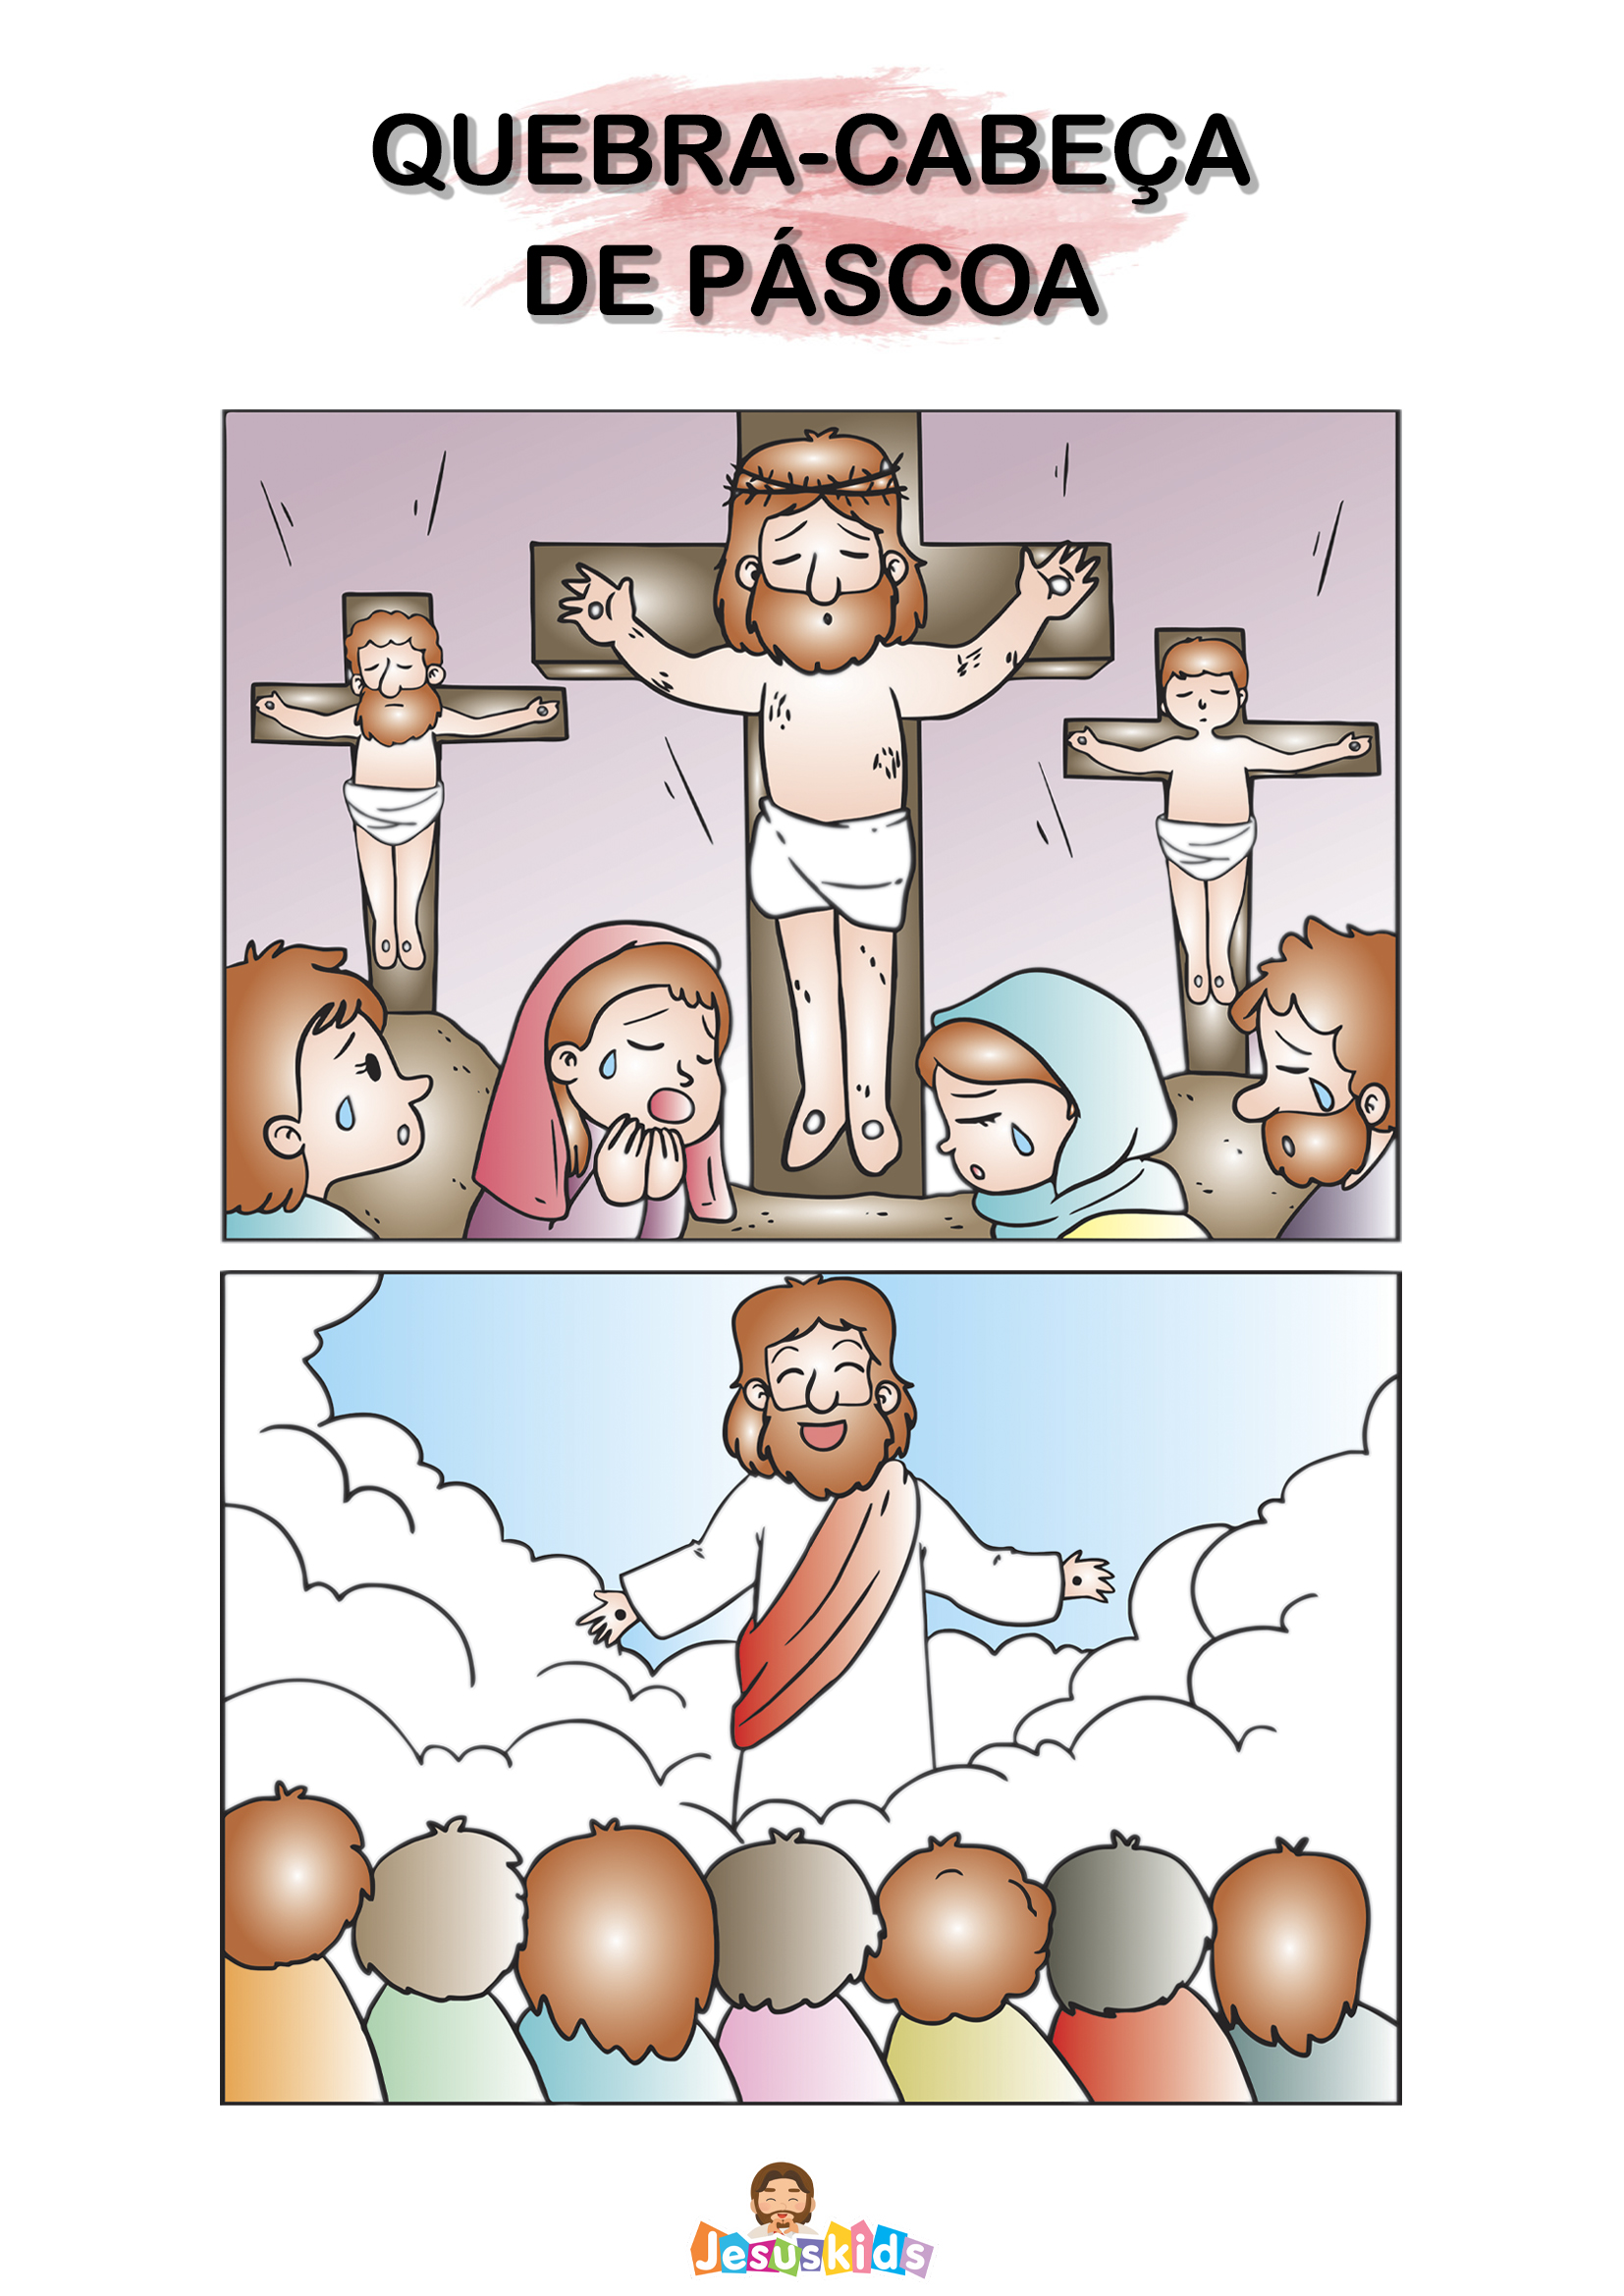 Gratuito - Quebra-cabeça de Páscoa » Jesus Kids